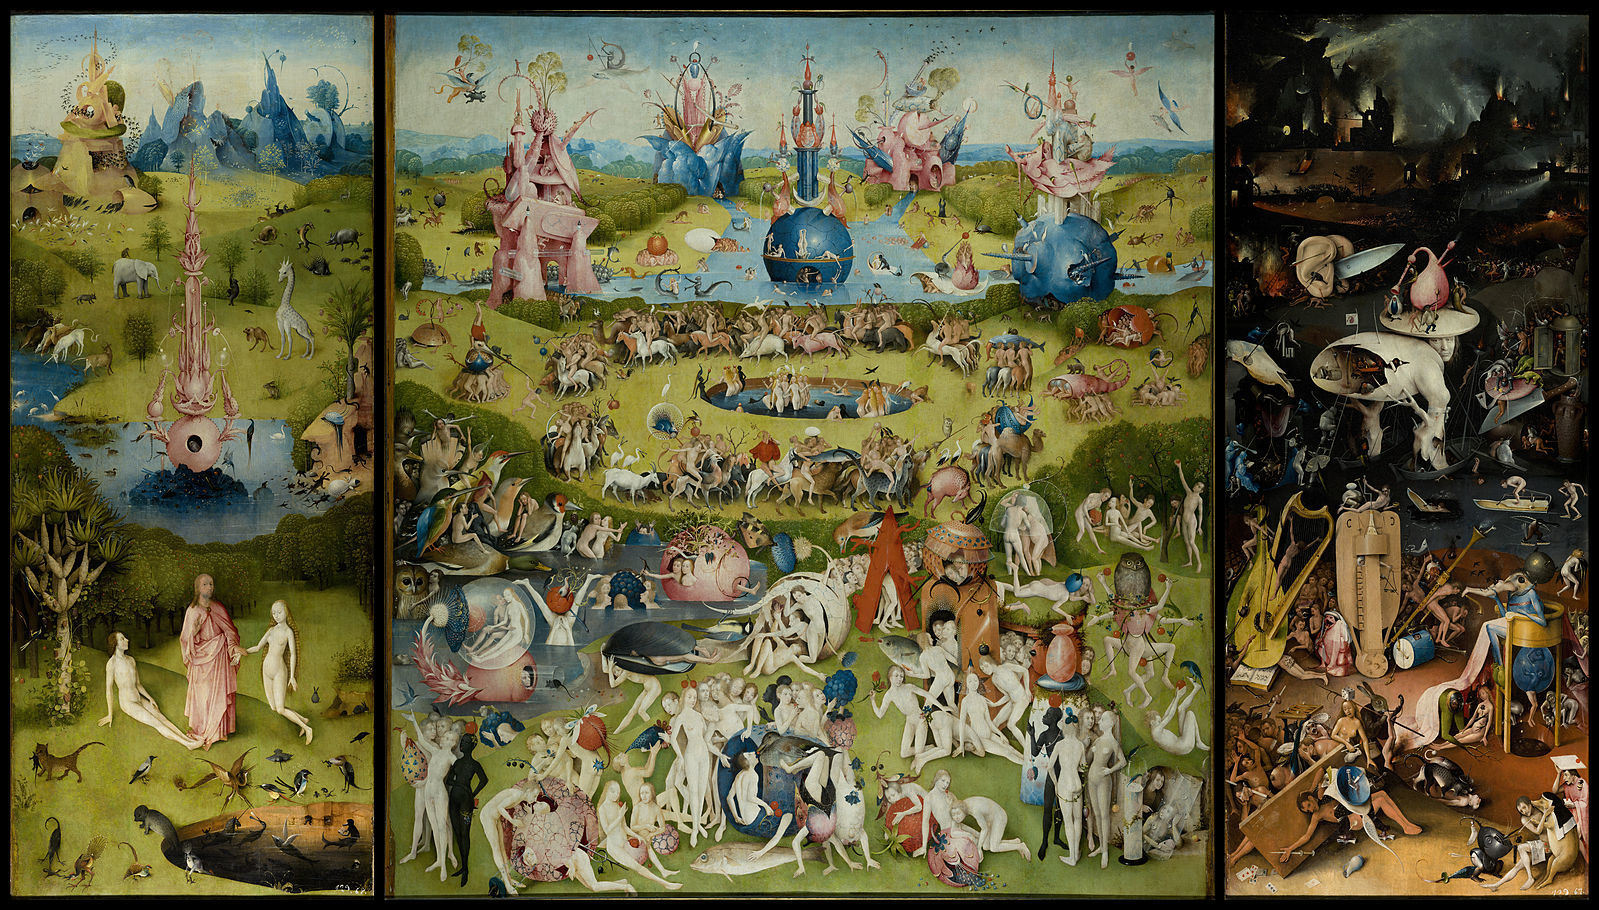 プラド美術館のヒエロニムス・ボス《快楽の園》。右端は地獄絵図です。 The Garden of Earthly Delights Medieval triptych by Hieronymus Bosch Public domain,via Wikimedia Commons